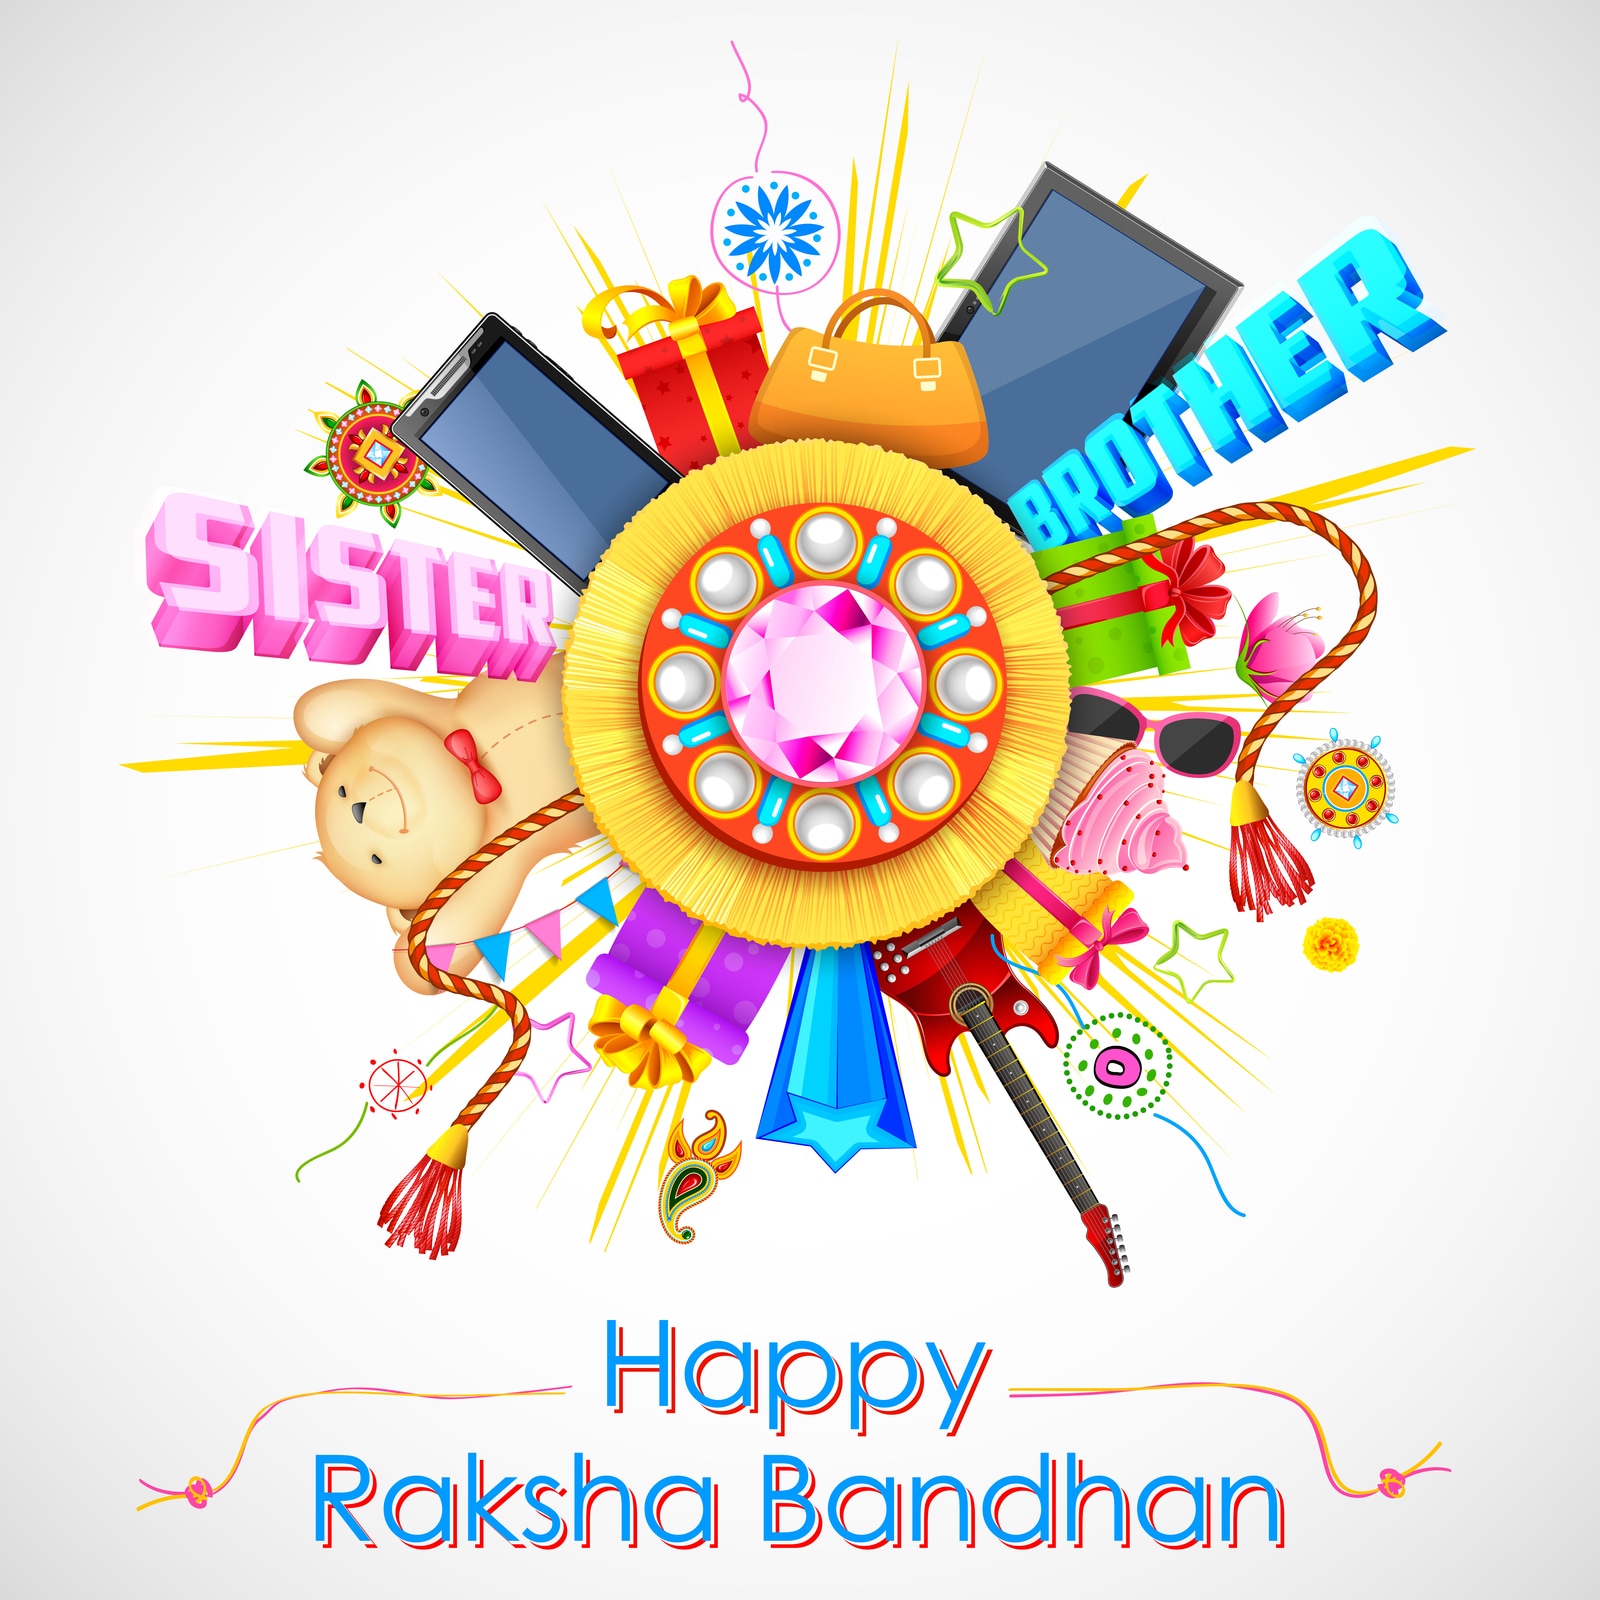 Best Jewellery Gifts for Raksha Bandhan - Blingvine